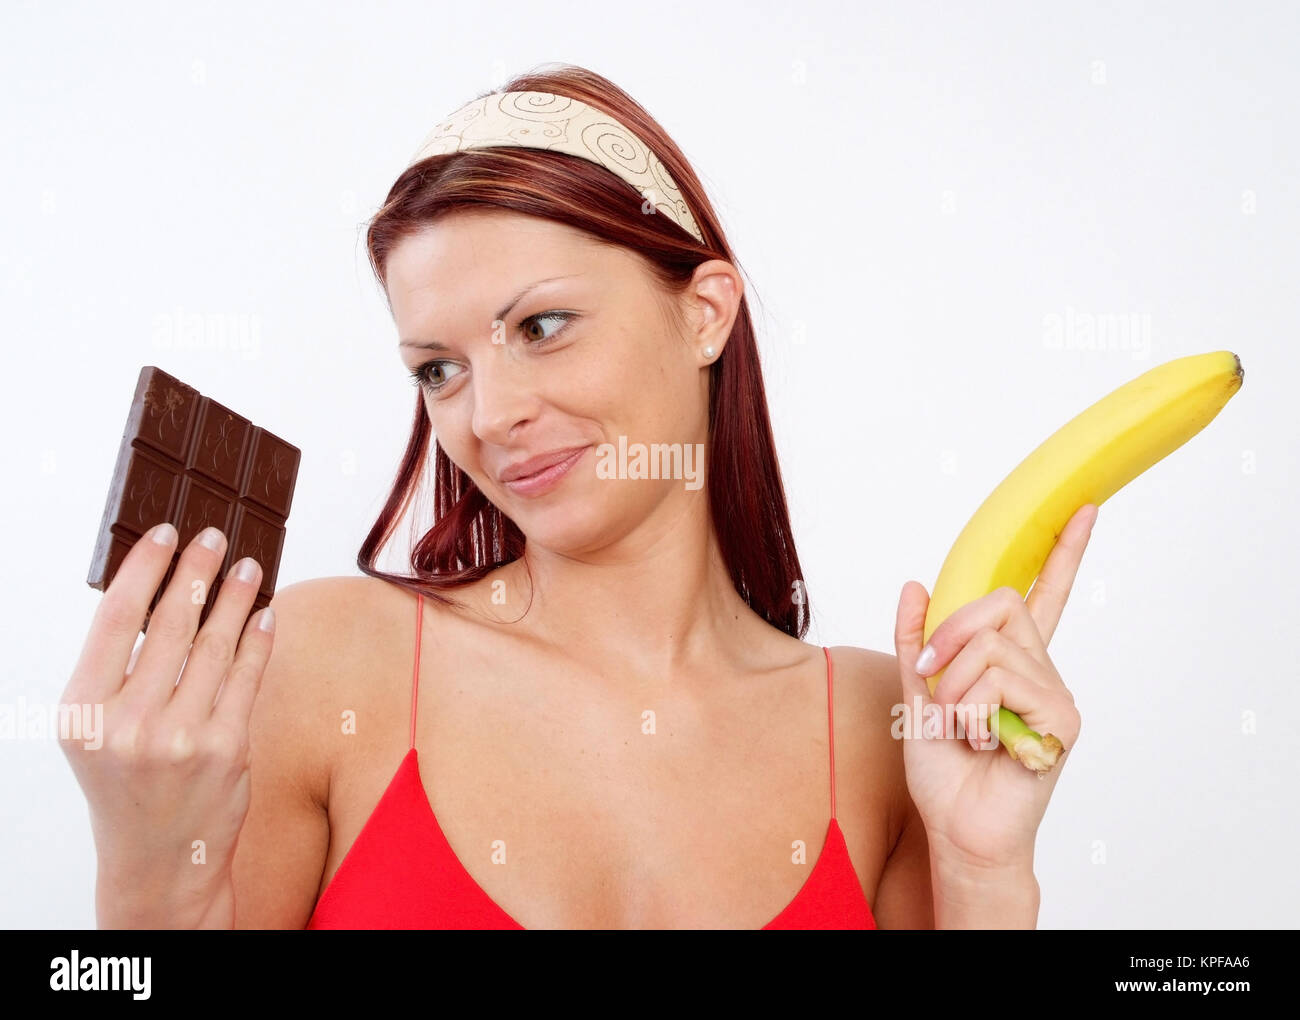 Junge Frau kann sich nicht zwischen Schokolade und Banane entscheiden - woman with chocolate and banana Stock Photo